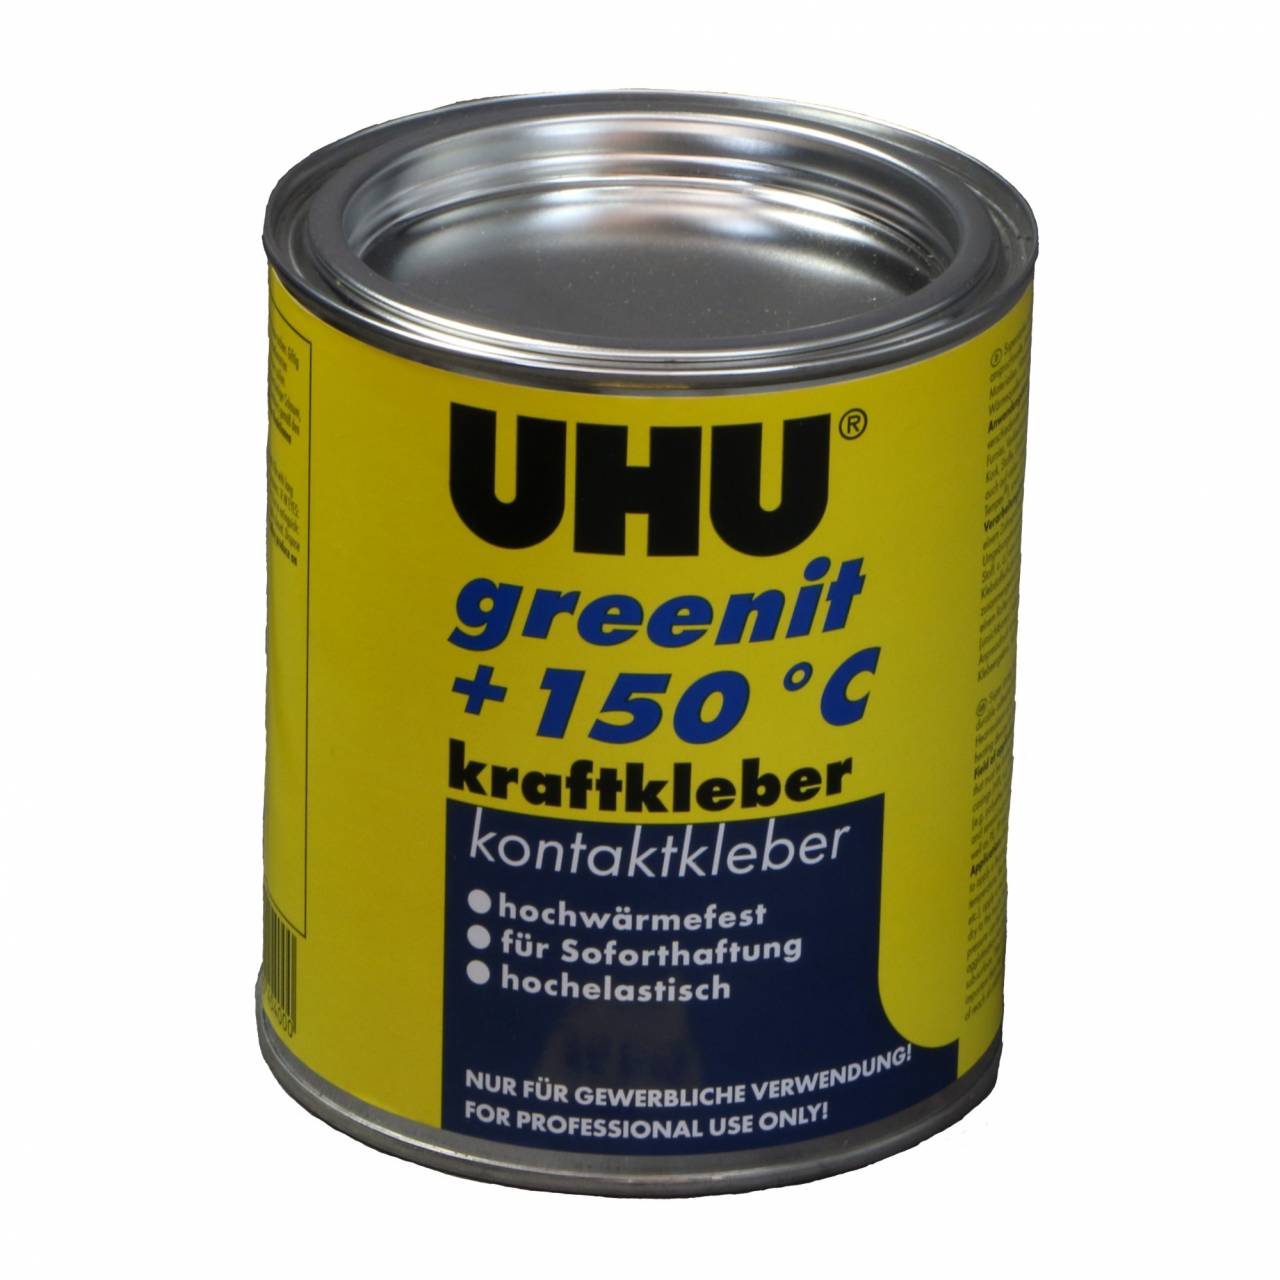 Uhu Kompakt-Kraftkleber 'Greenit +150Y' / 640 g Dose